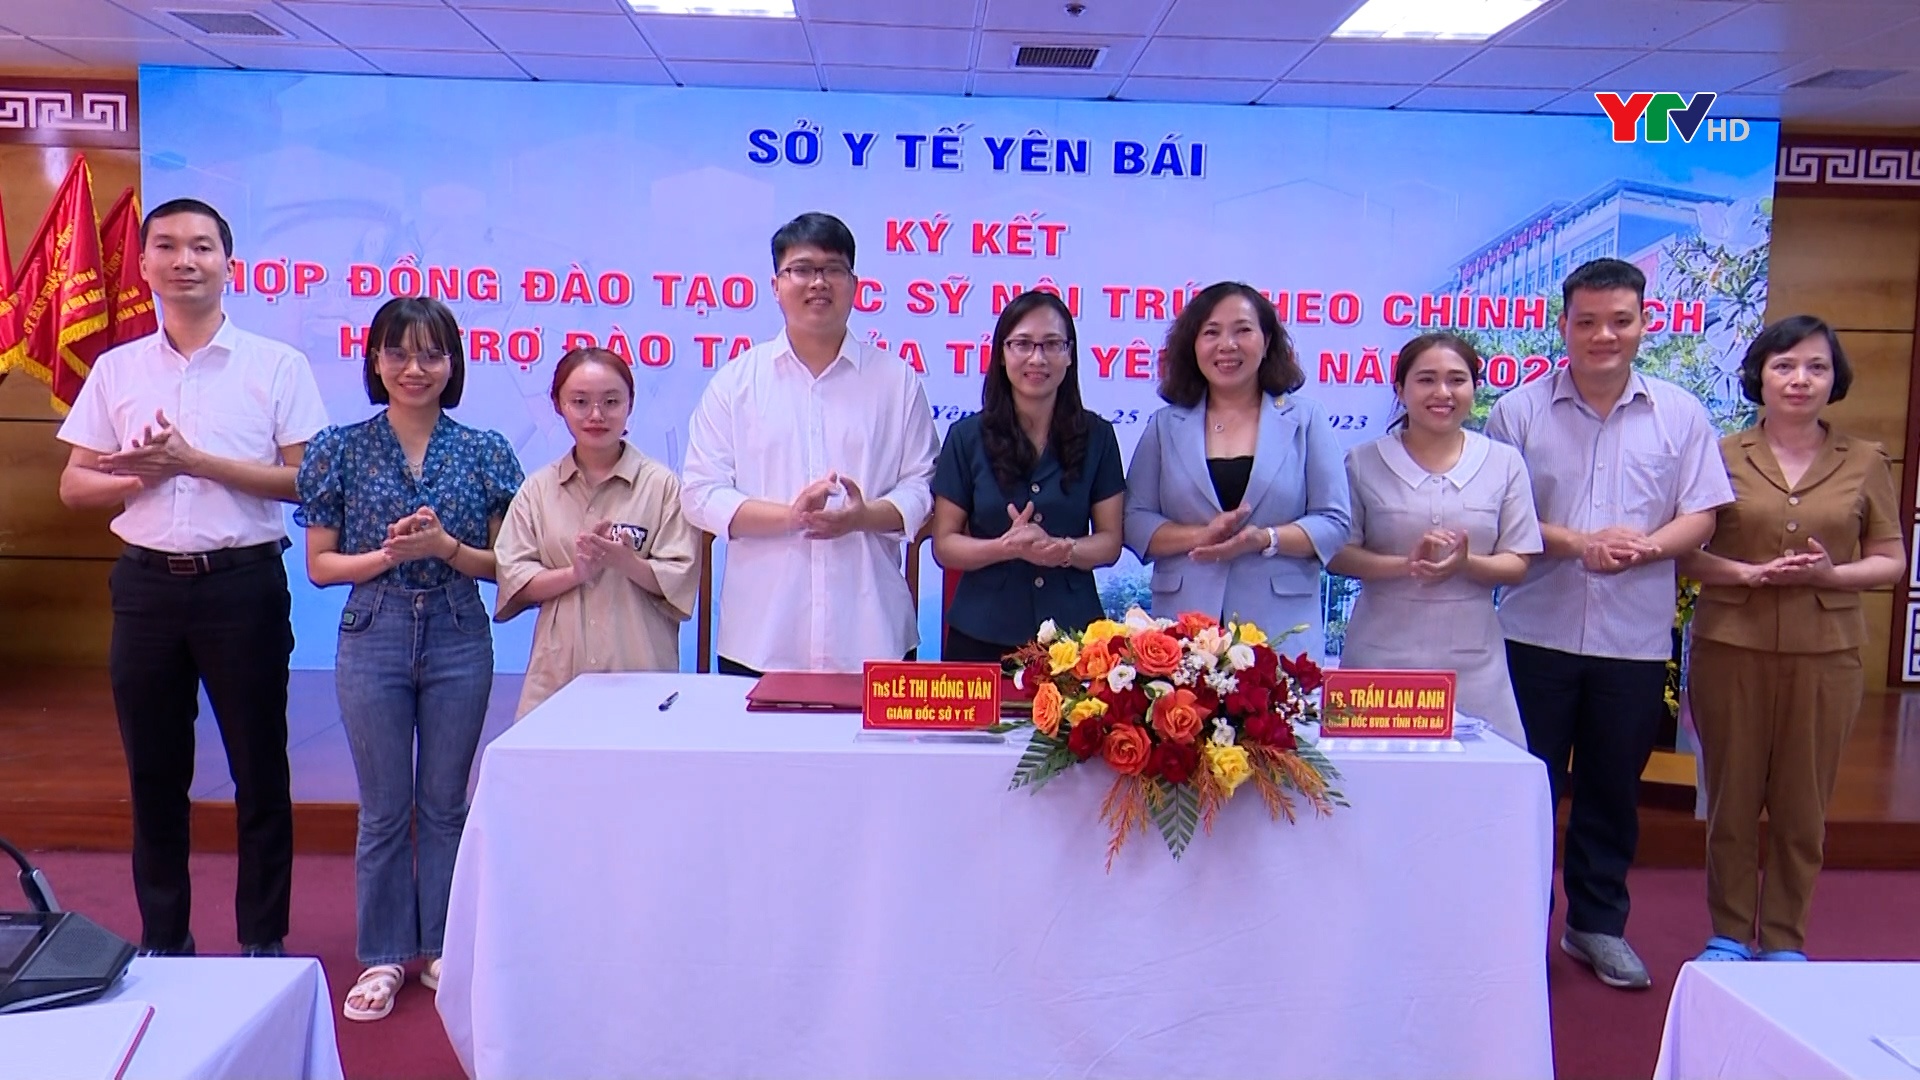 Ký kết hợp đồng đào tạo bác sĩ nội trú theo chính sách hỗ trợ đào tạo của tỉnh Yên Bái